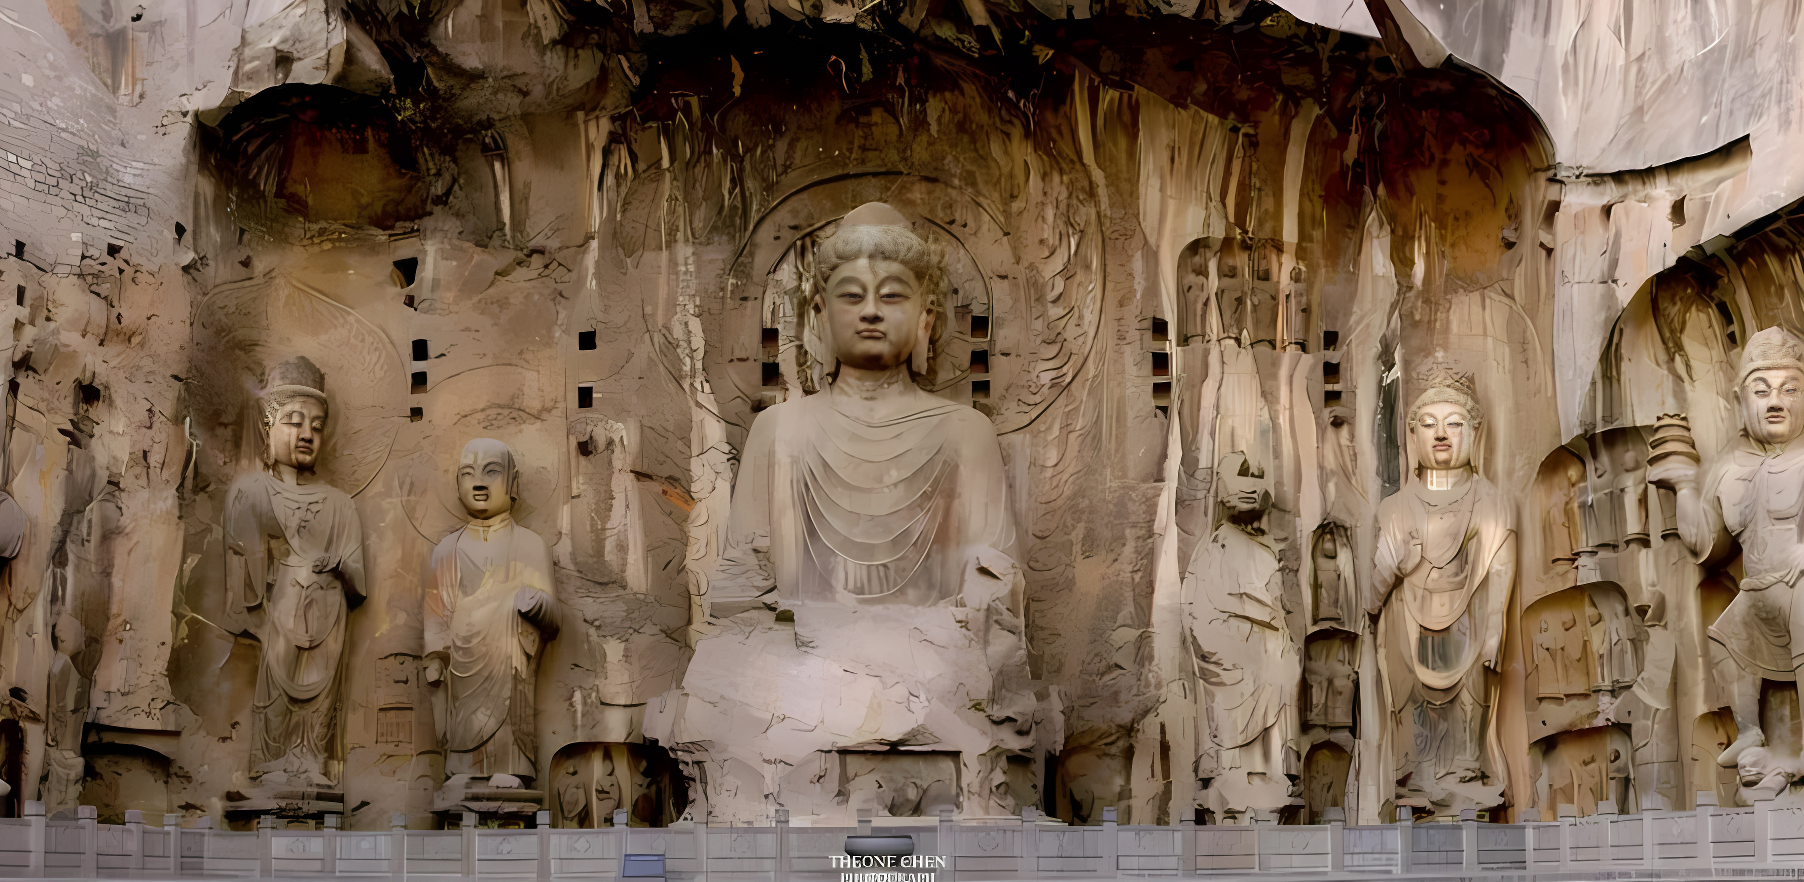 图片展示了雕刻精美的佛像群，位于岩石壁中，体现了丰富的宗教文化和古代雕塑艺术。